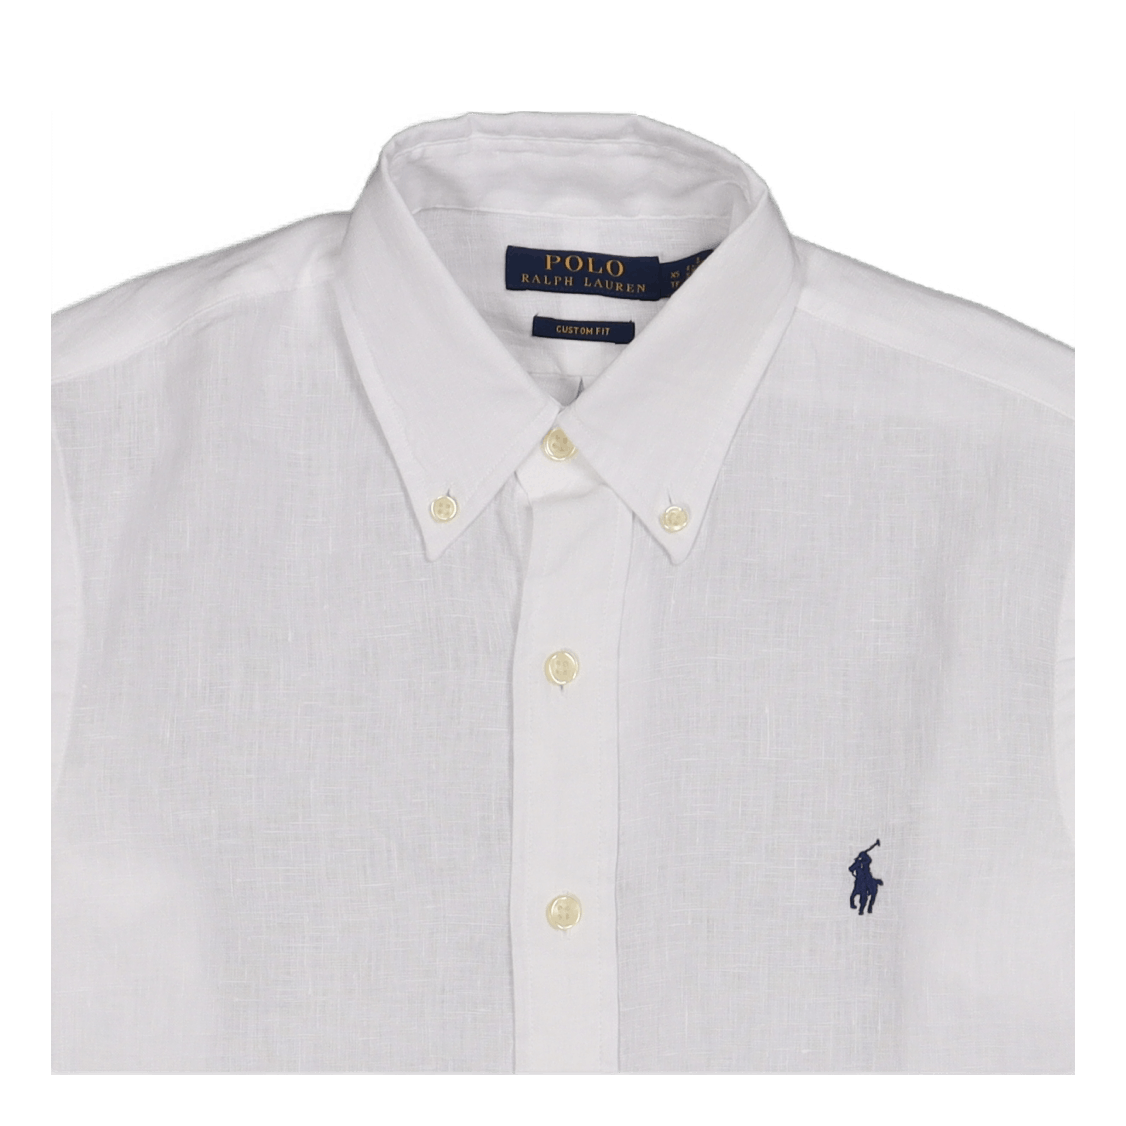 Custom Fit Linen Shirt White